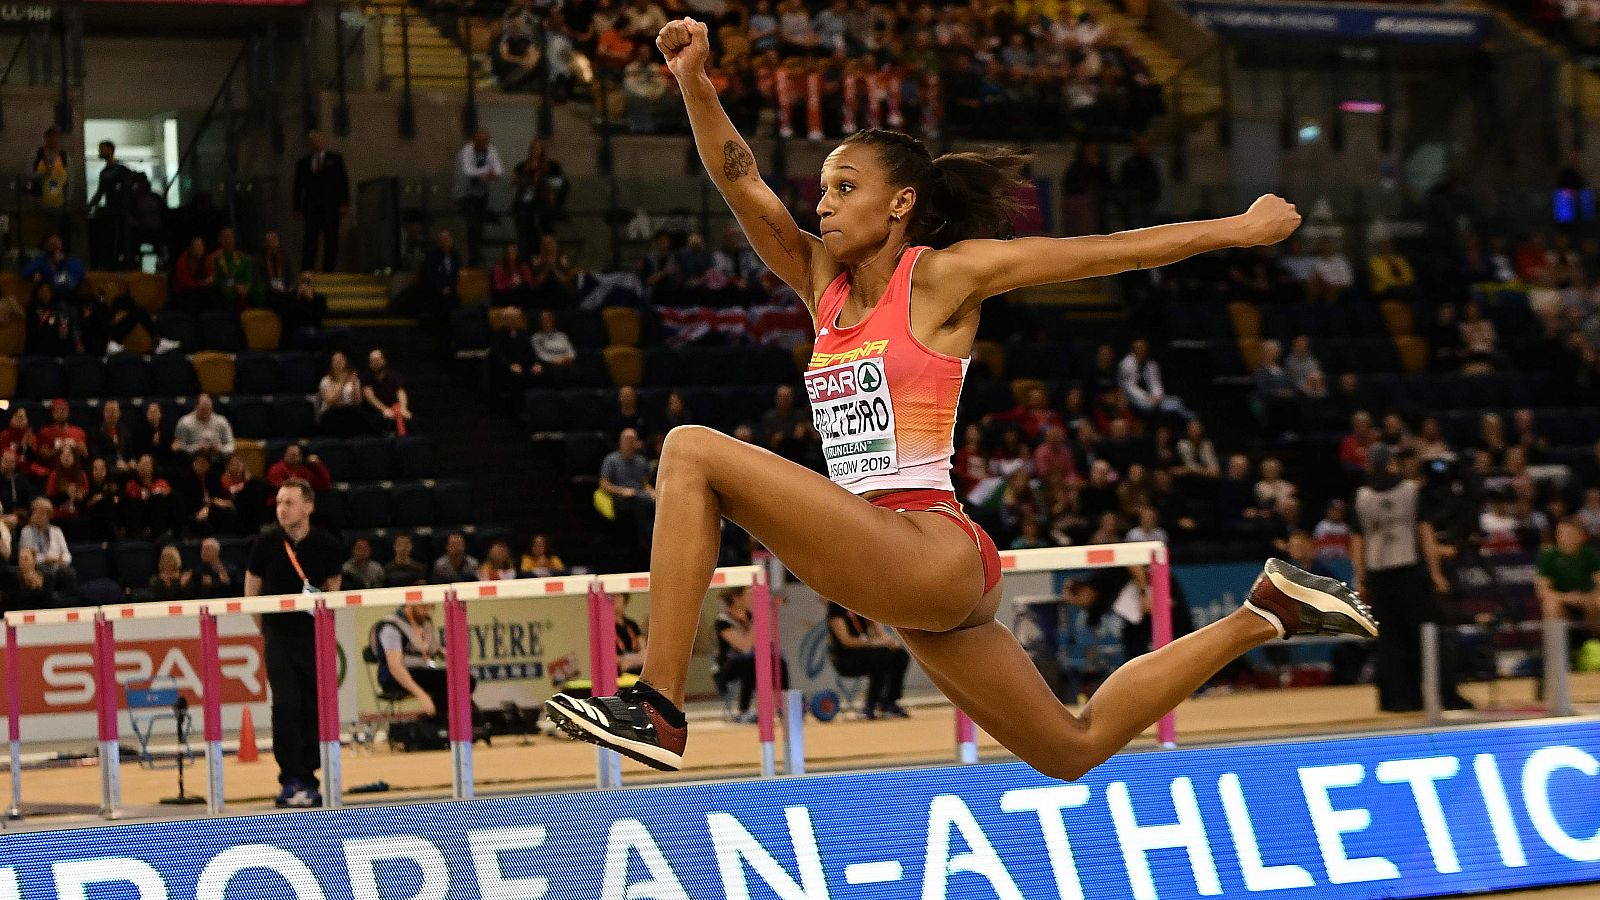 Atletismo: El salto con el que ha ganado el oro Ana Peleteiro - rtve.es